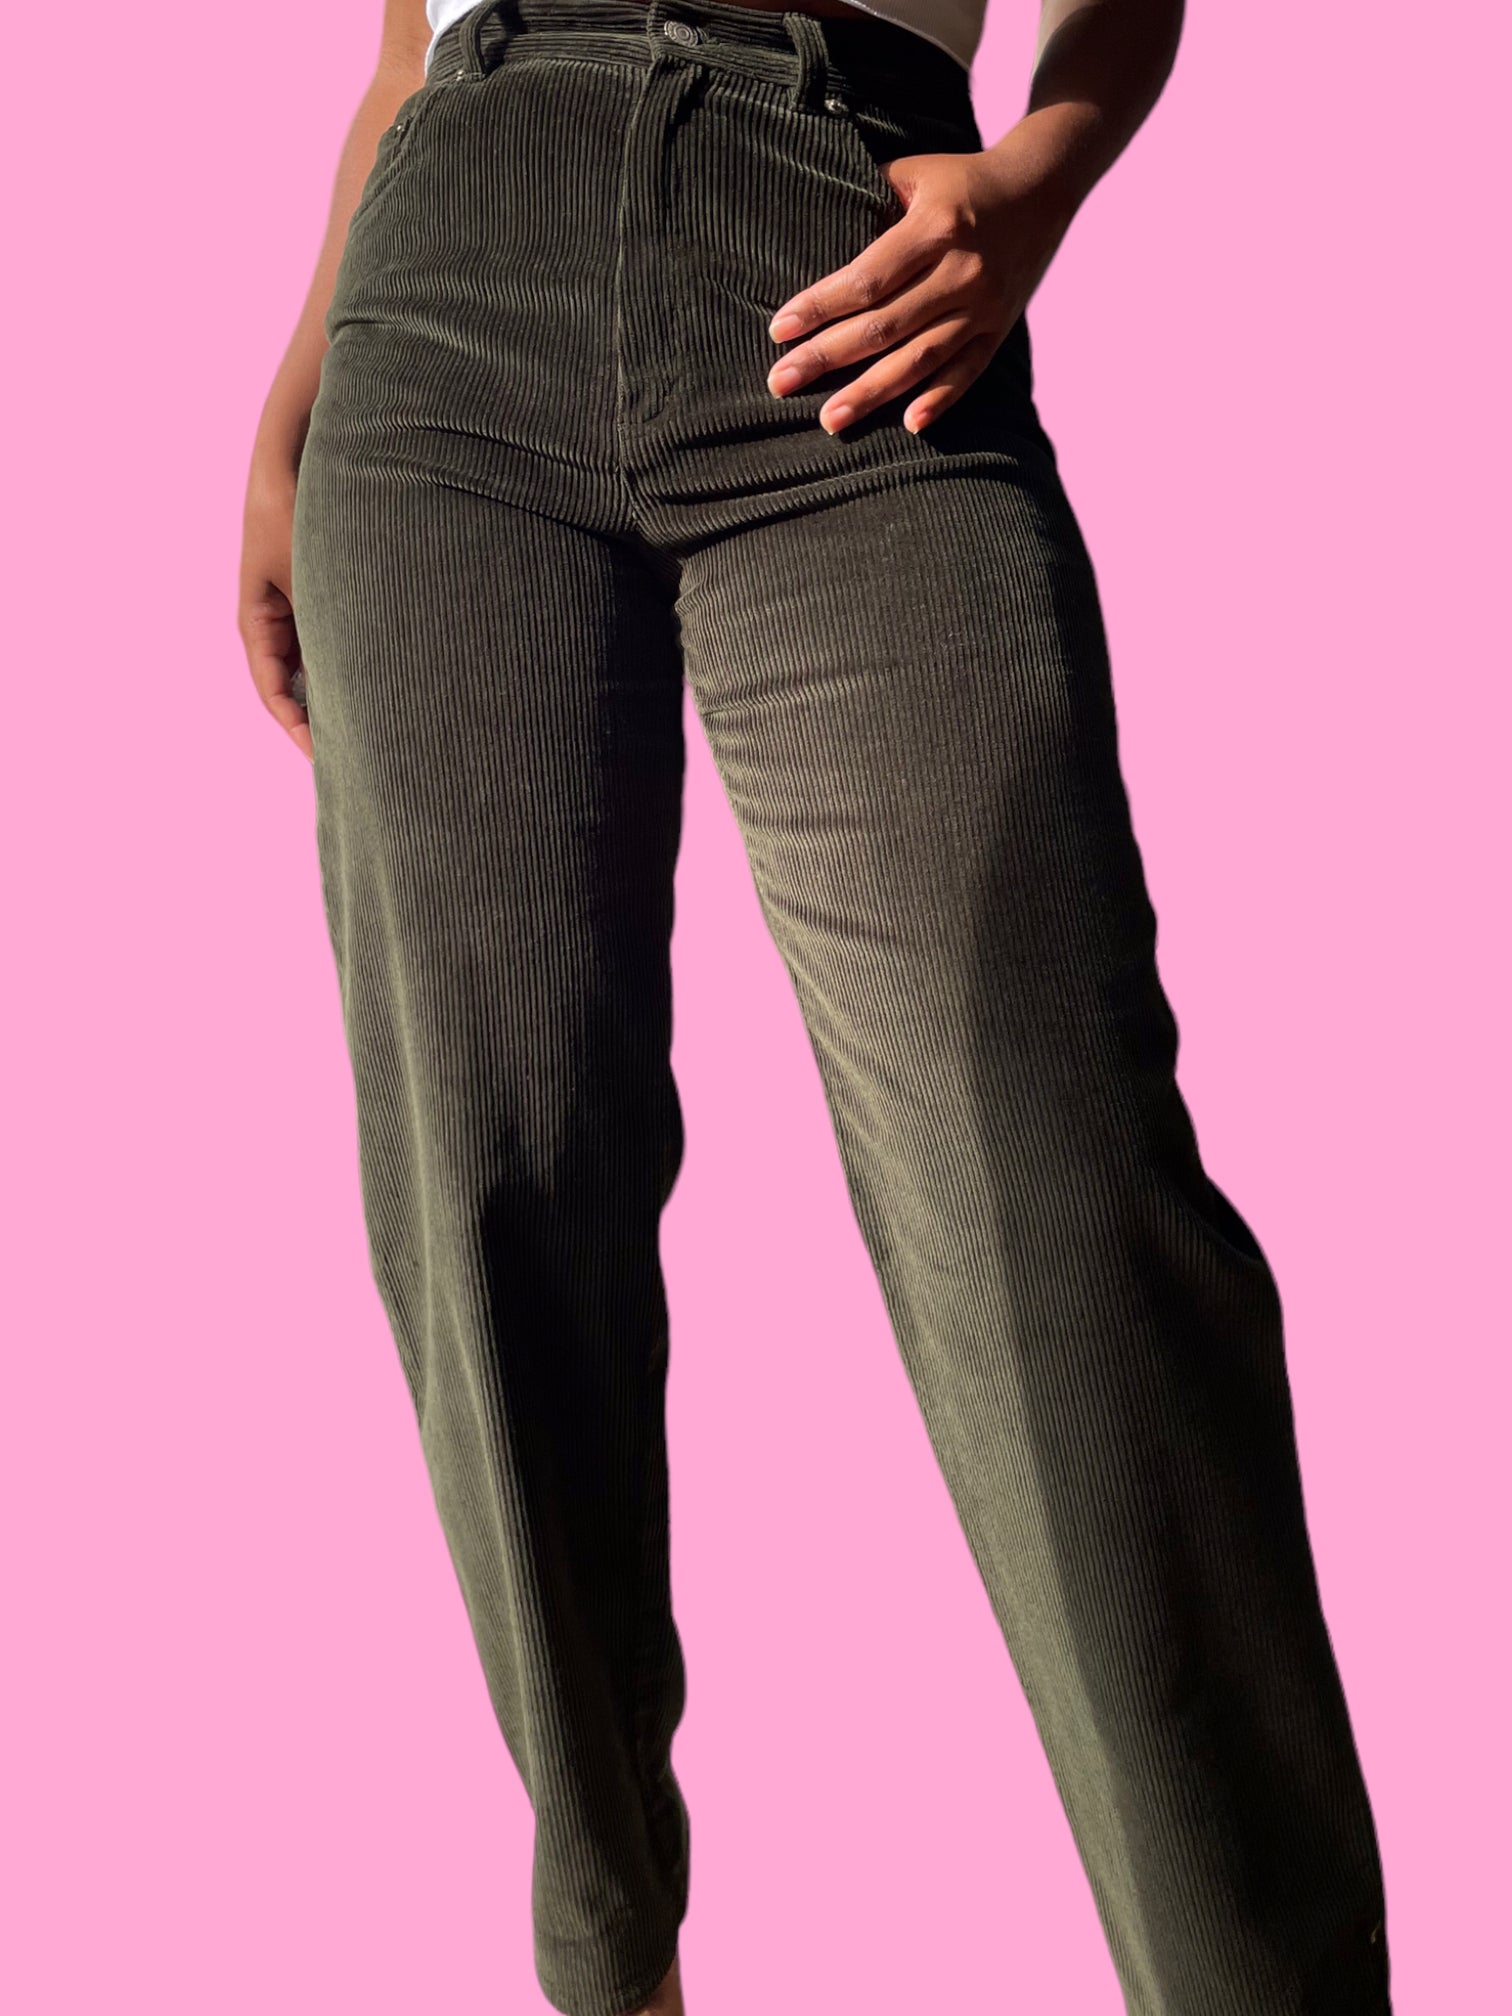 Ralph Lauren dark green corduroy pants.